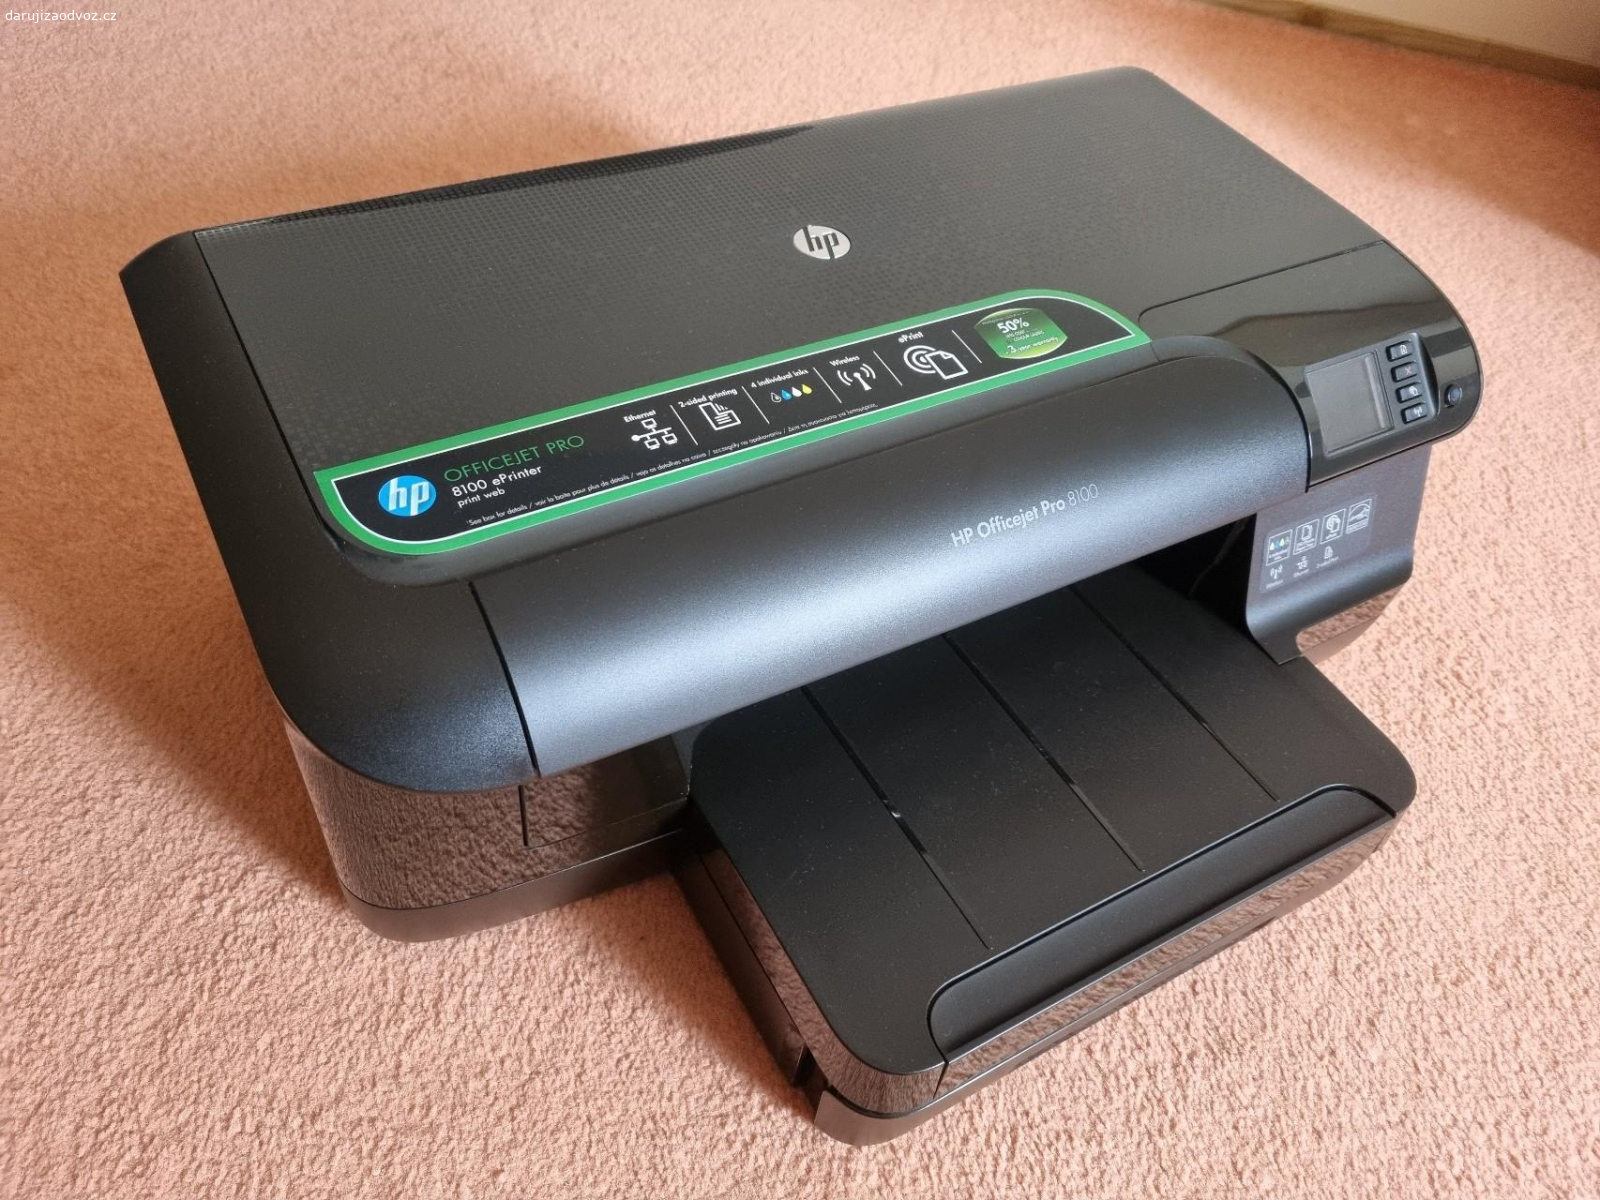 HP Officejet Pro 8100. Stará tiskárna s funkcí oboustranného tisku. Vadný displej. Nutno dokoupit cartridge. Bez kabelu k PC.